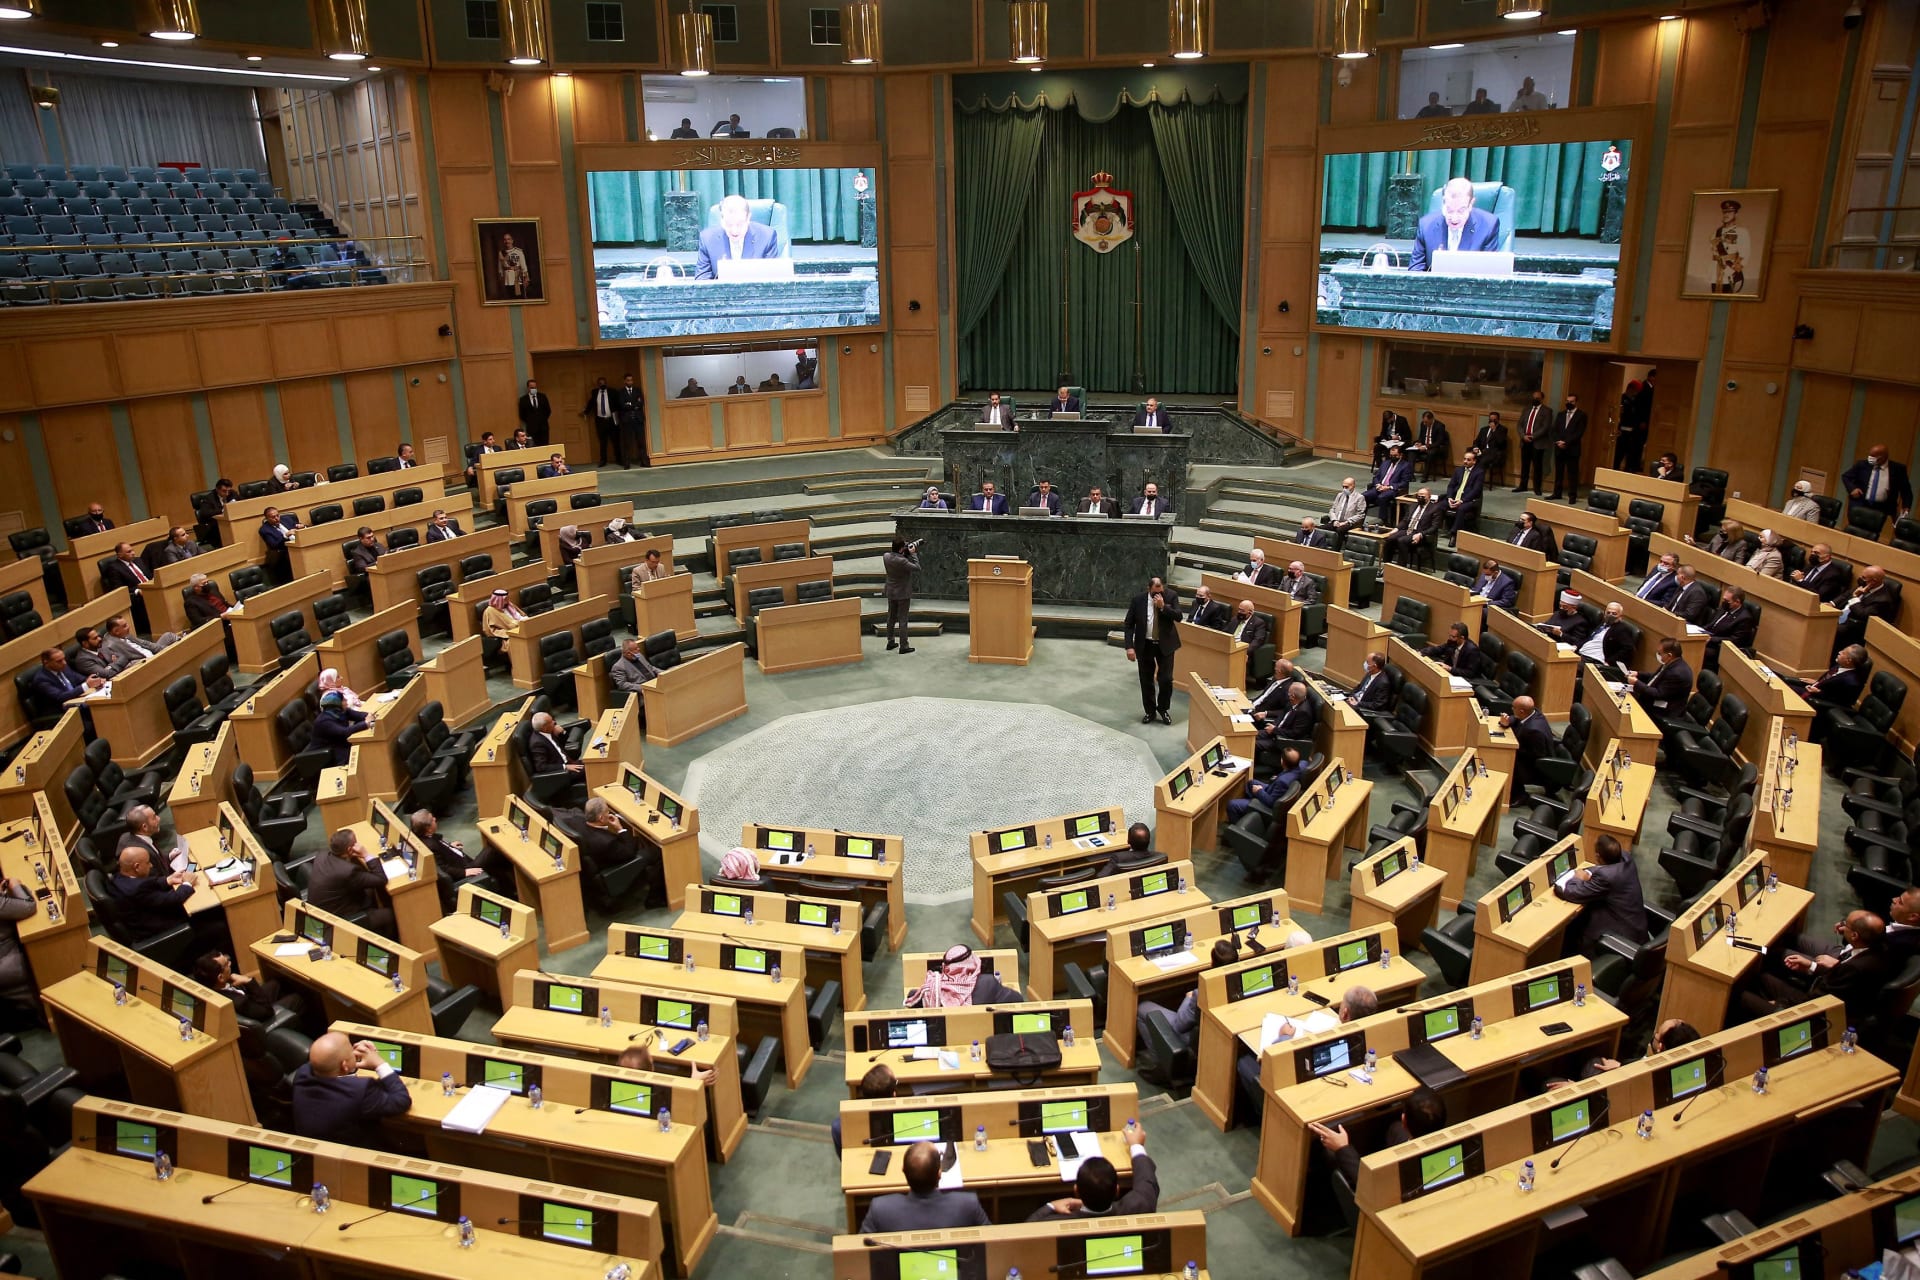 الأردن.. جدل مشروع قانون "الجرائم الإلكترونية" يتسع عشية بدء البرلمان بالمناقشة